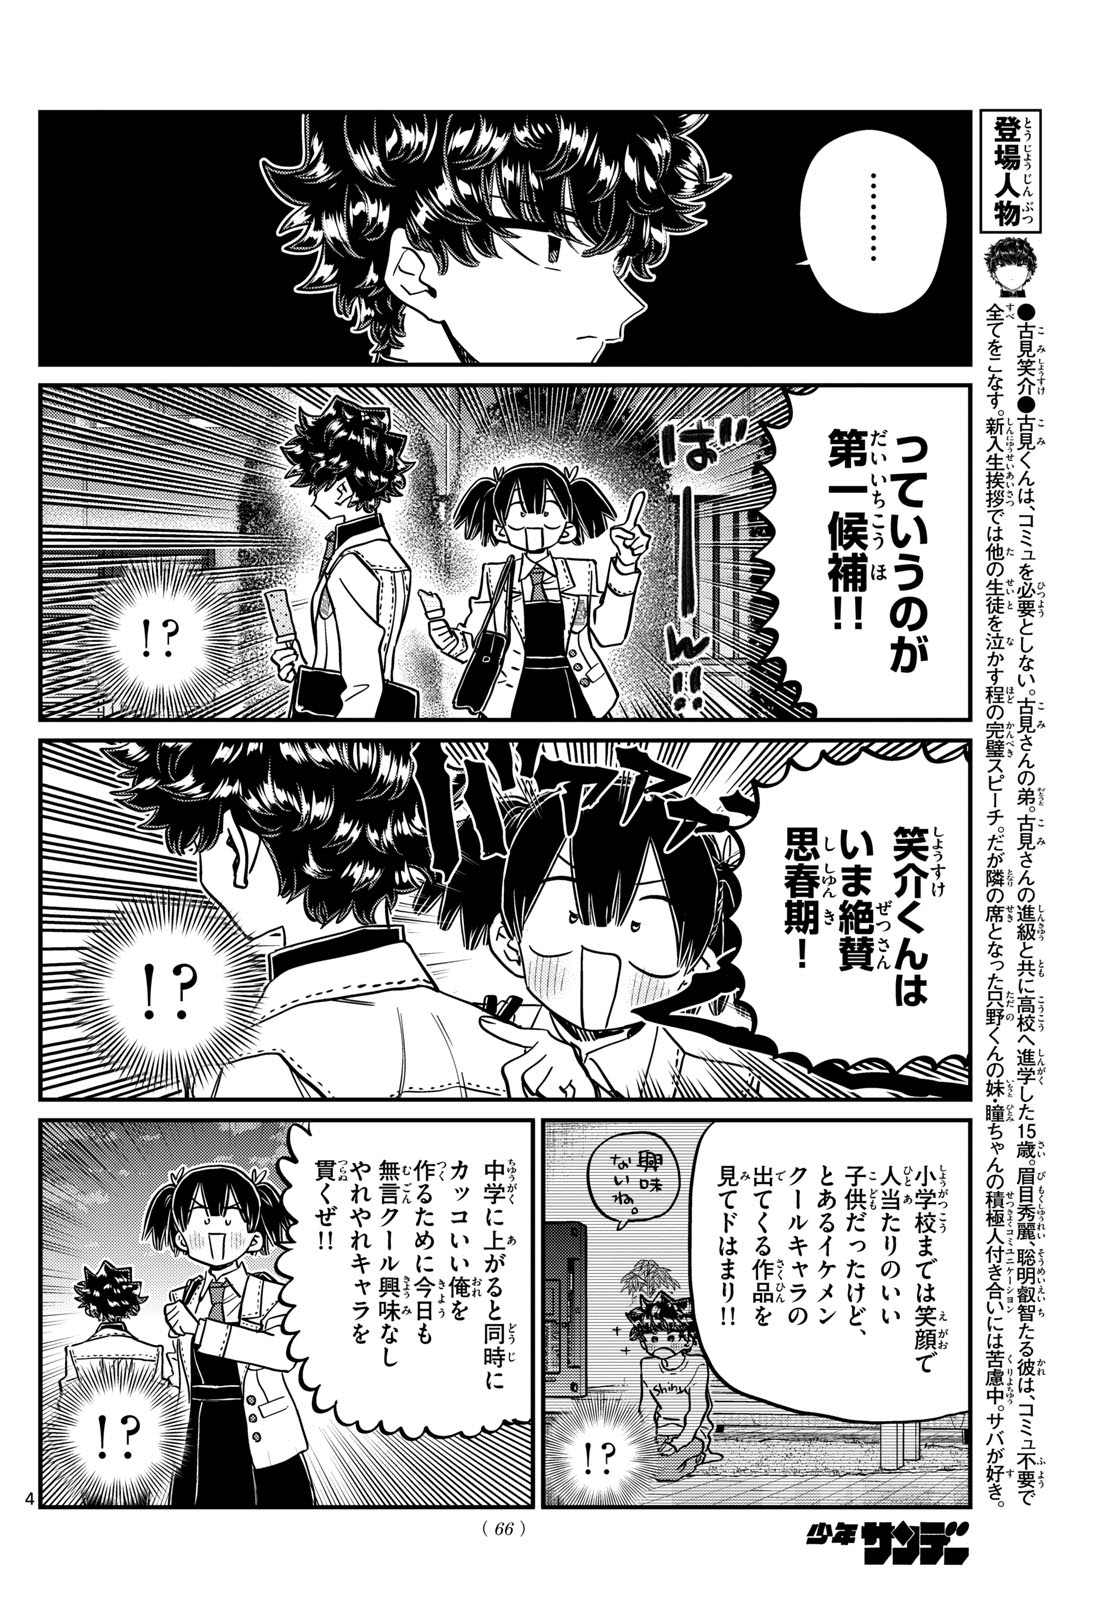 Komi-san wa Komyushou Desu - Chapter 462 - Page 4